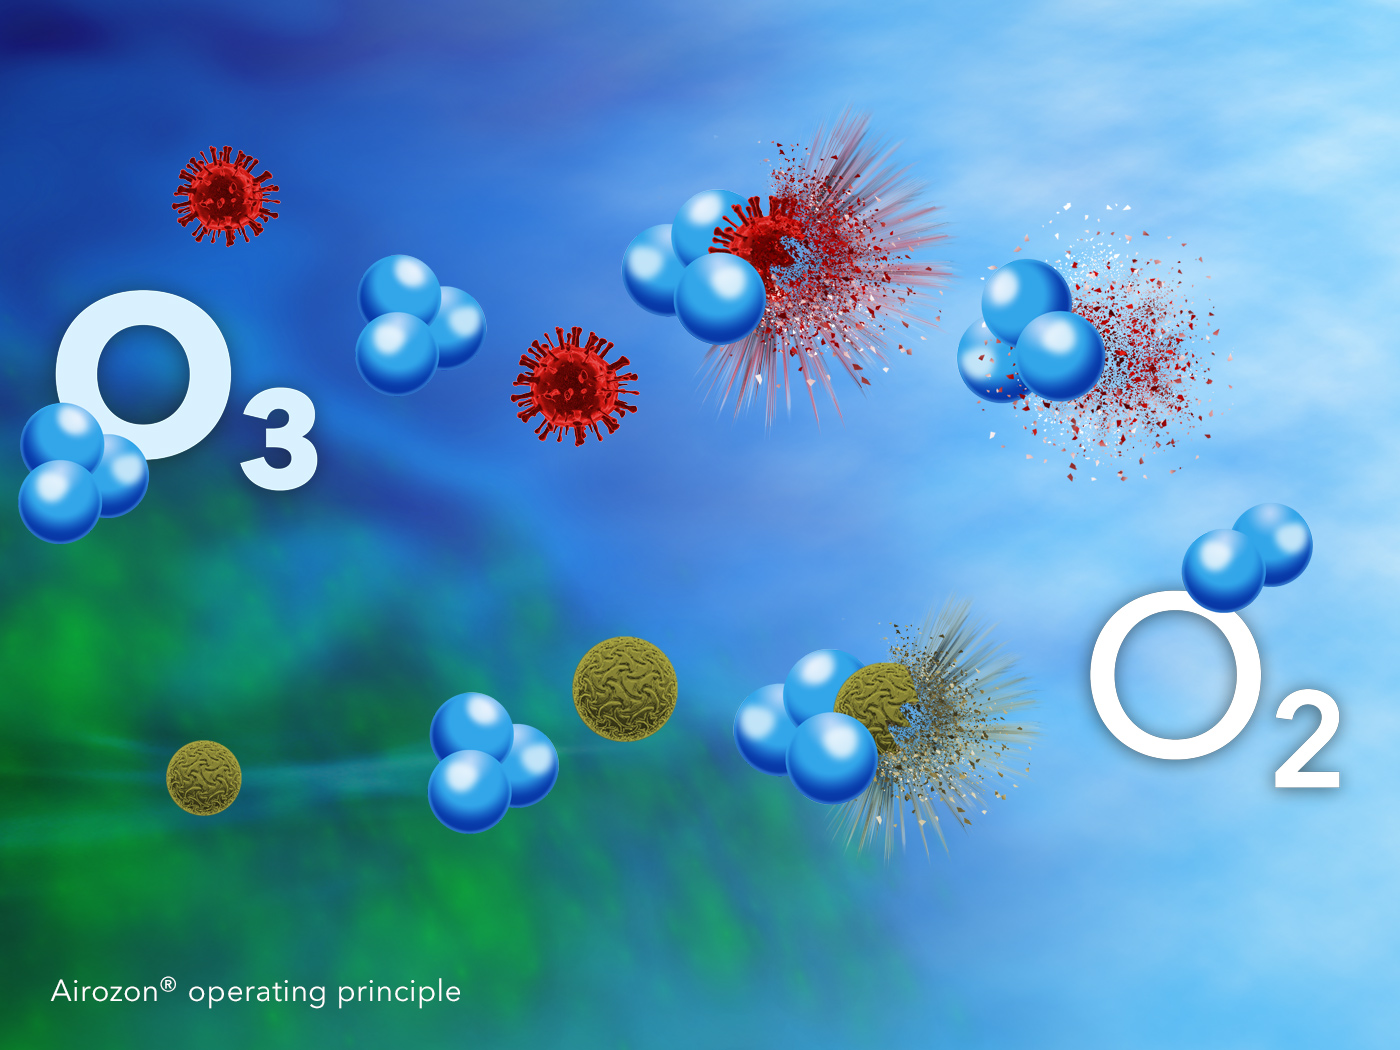 Principe de fonctionnement de l’ozonisation Airozon pour la désinfection et la neutralisation des odeurs par oxydation